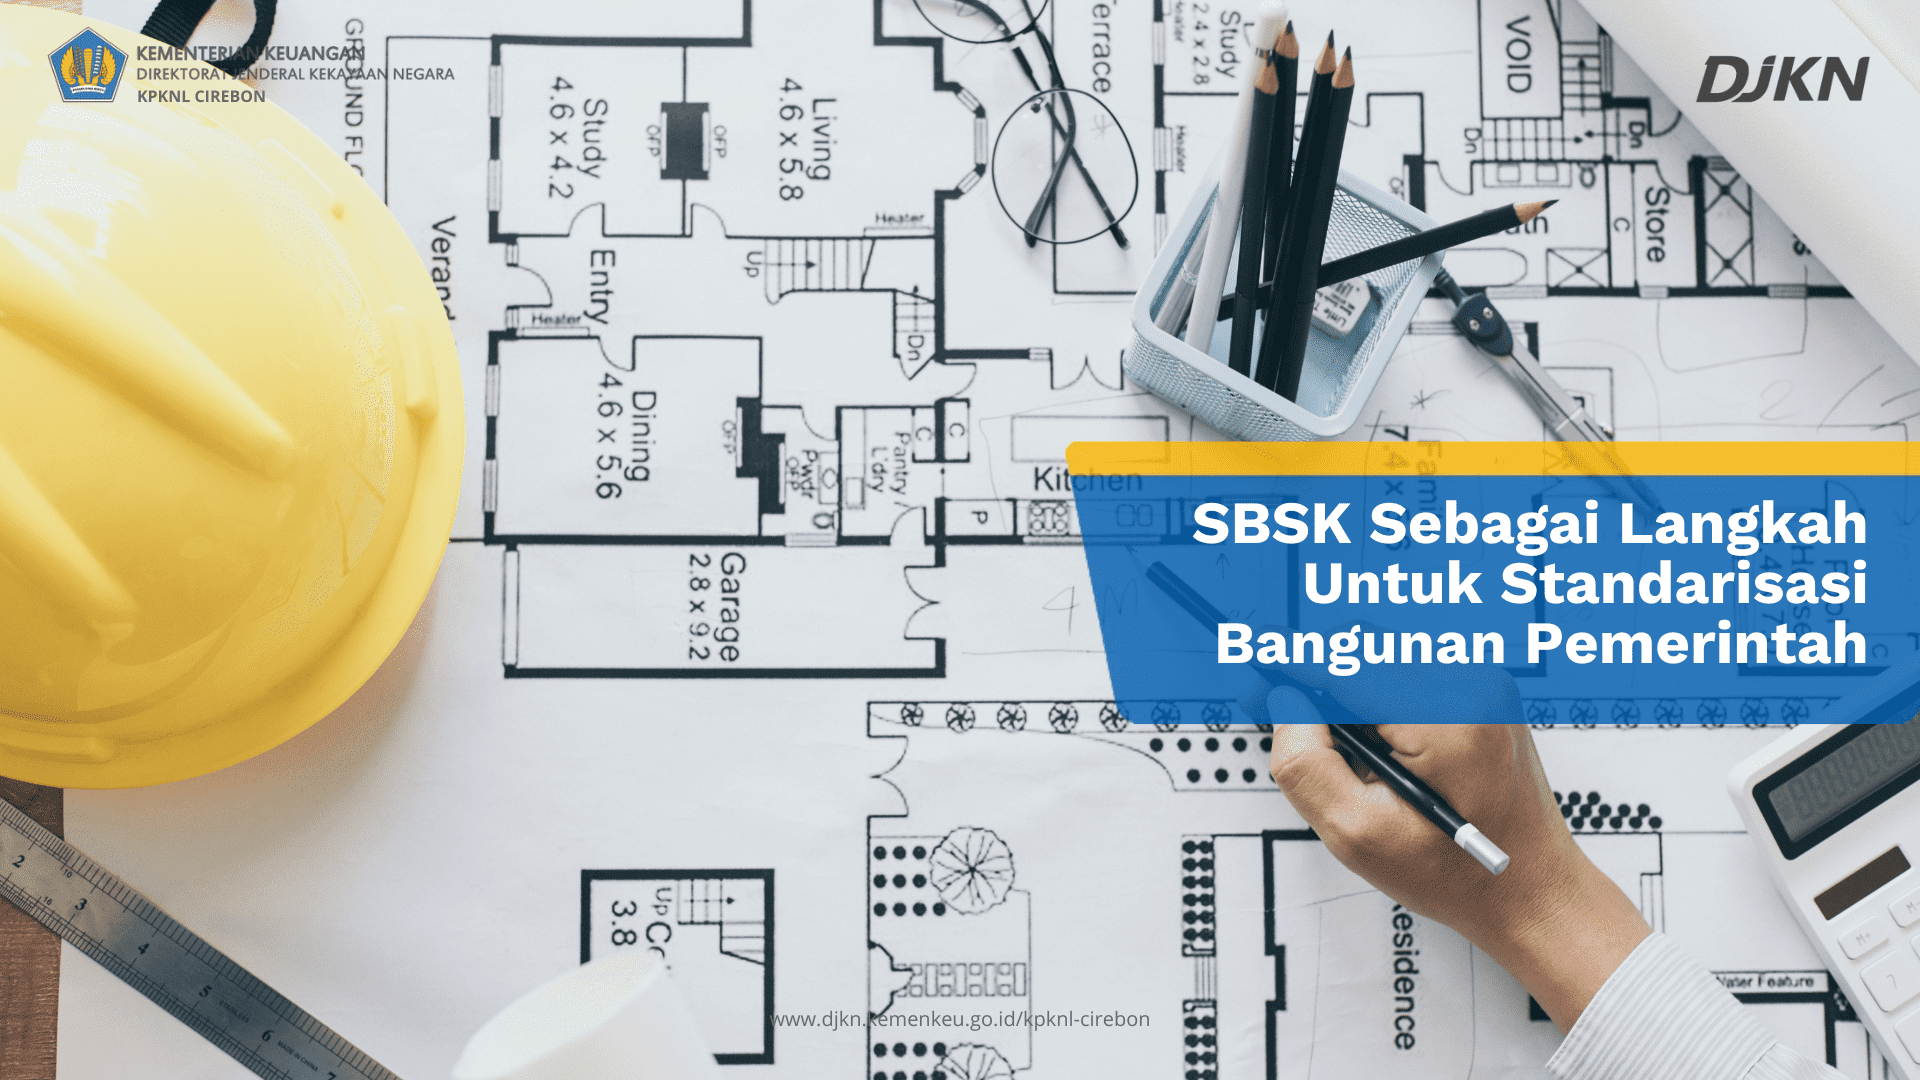 SBSK Sebagai Langkah Untuk Standarisasi Bangunan Pemerintah